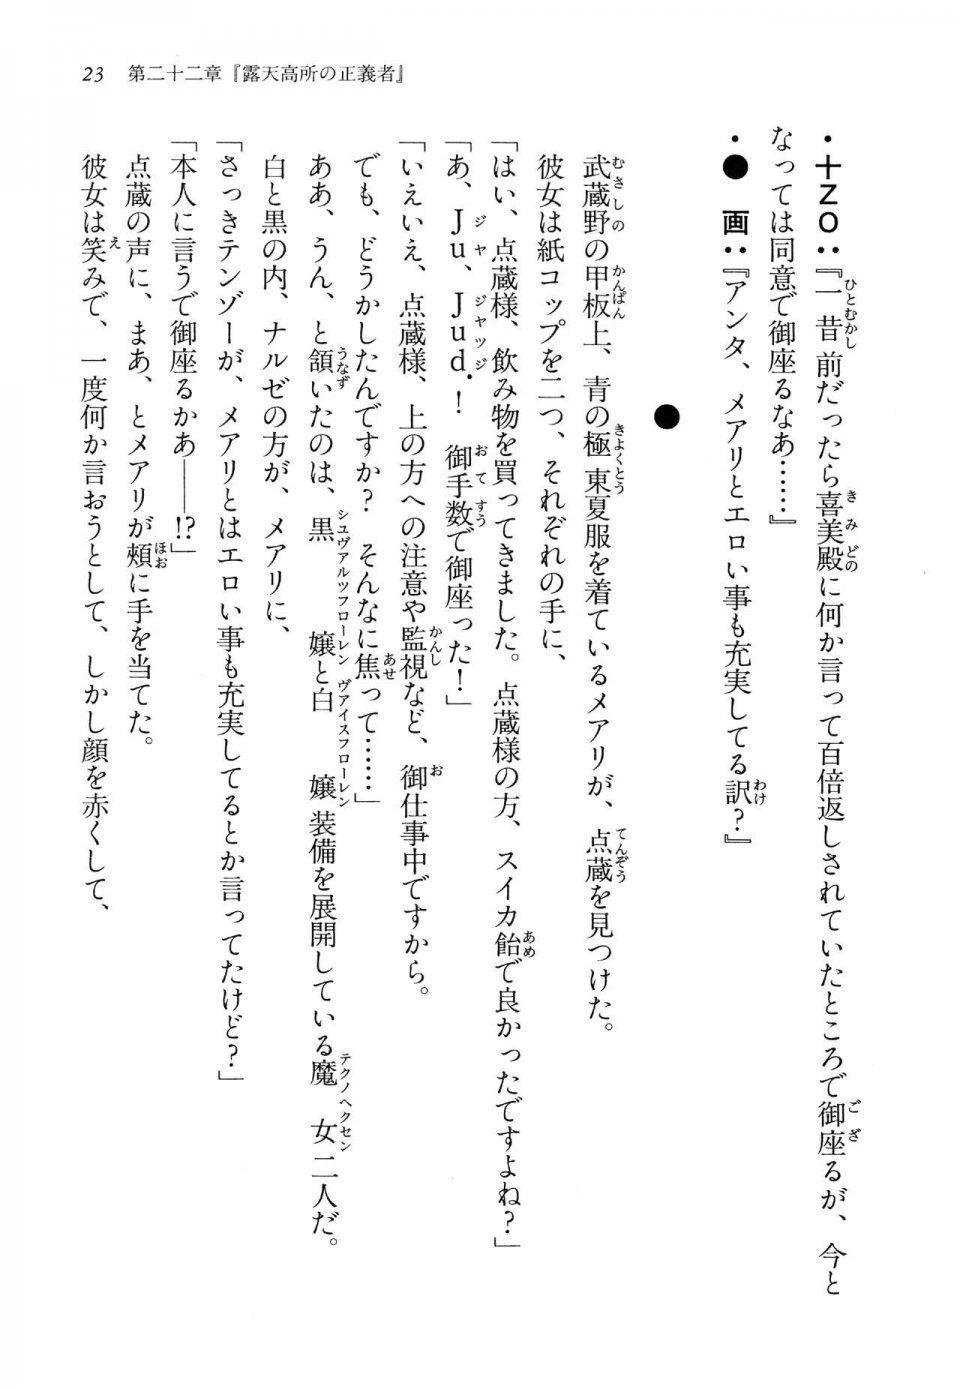 Kyoukai Senjou no Horizon LN Vol 14(6B) - Photo #23